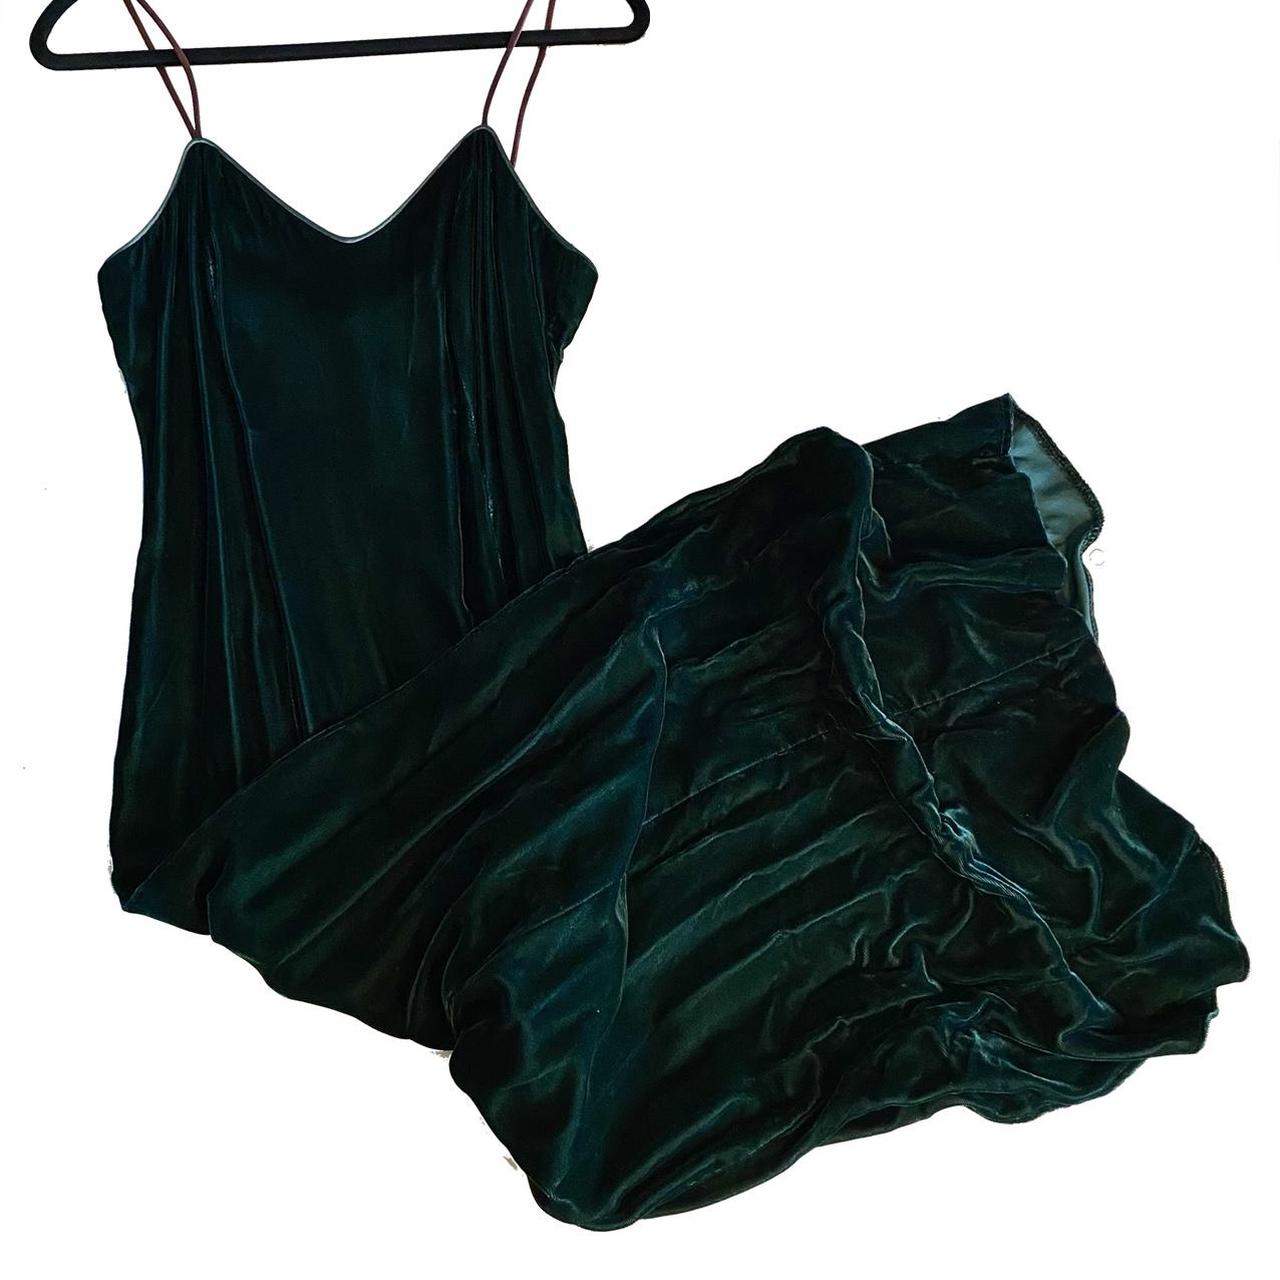 dark green velvet floor length dress with slit,... - Depop